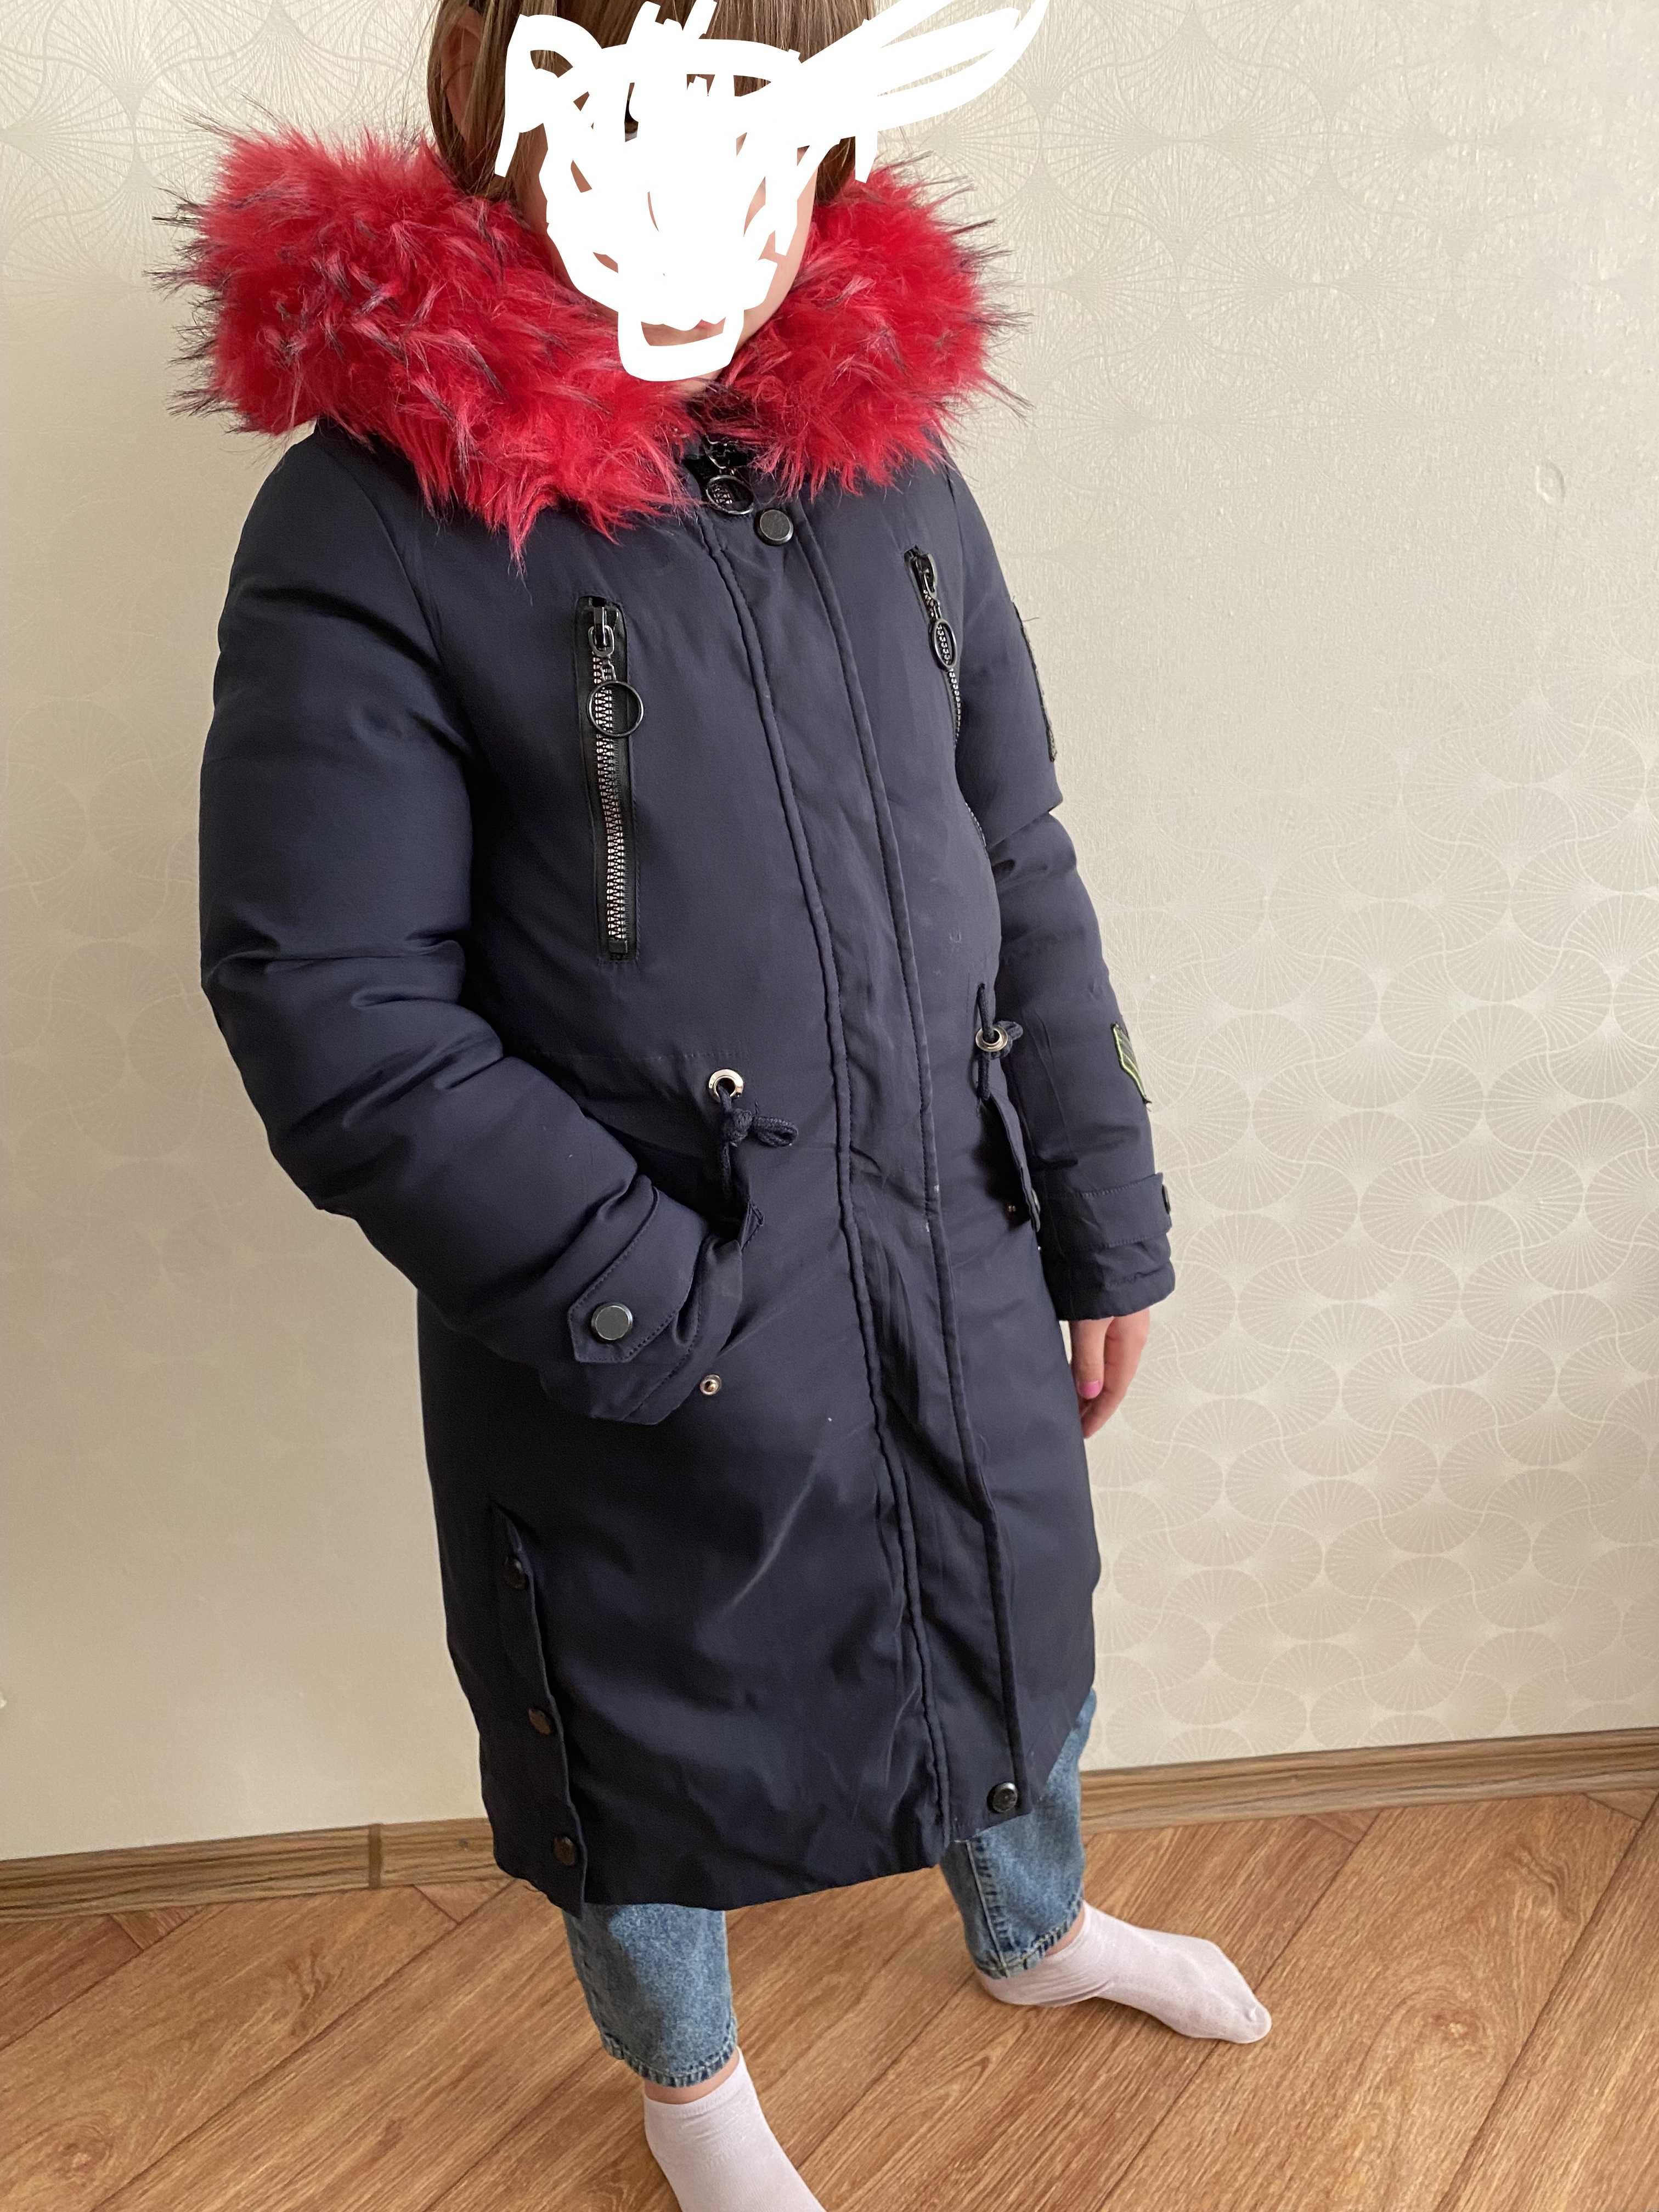 Зимняя куртка/парка/пуховик на девочку